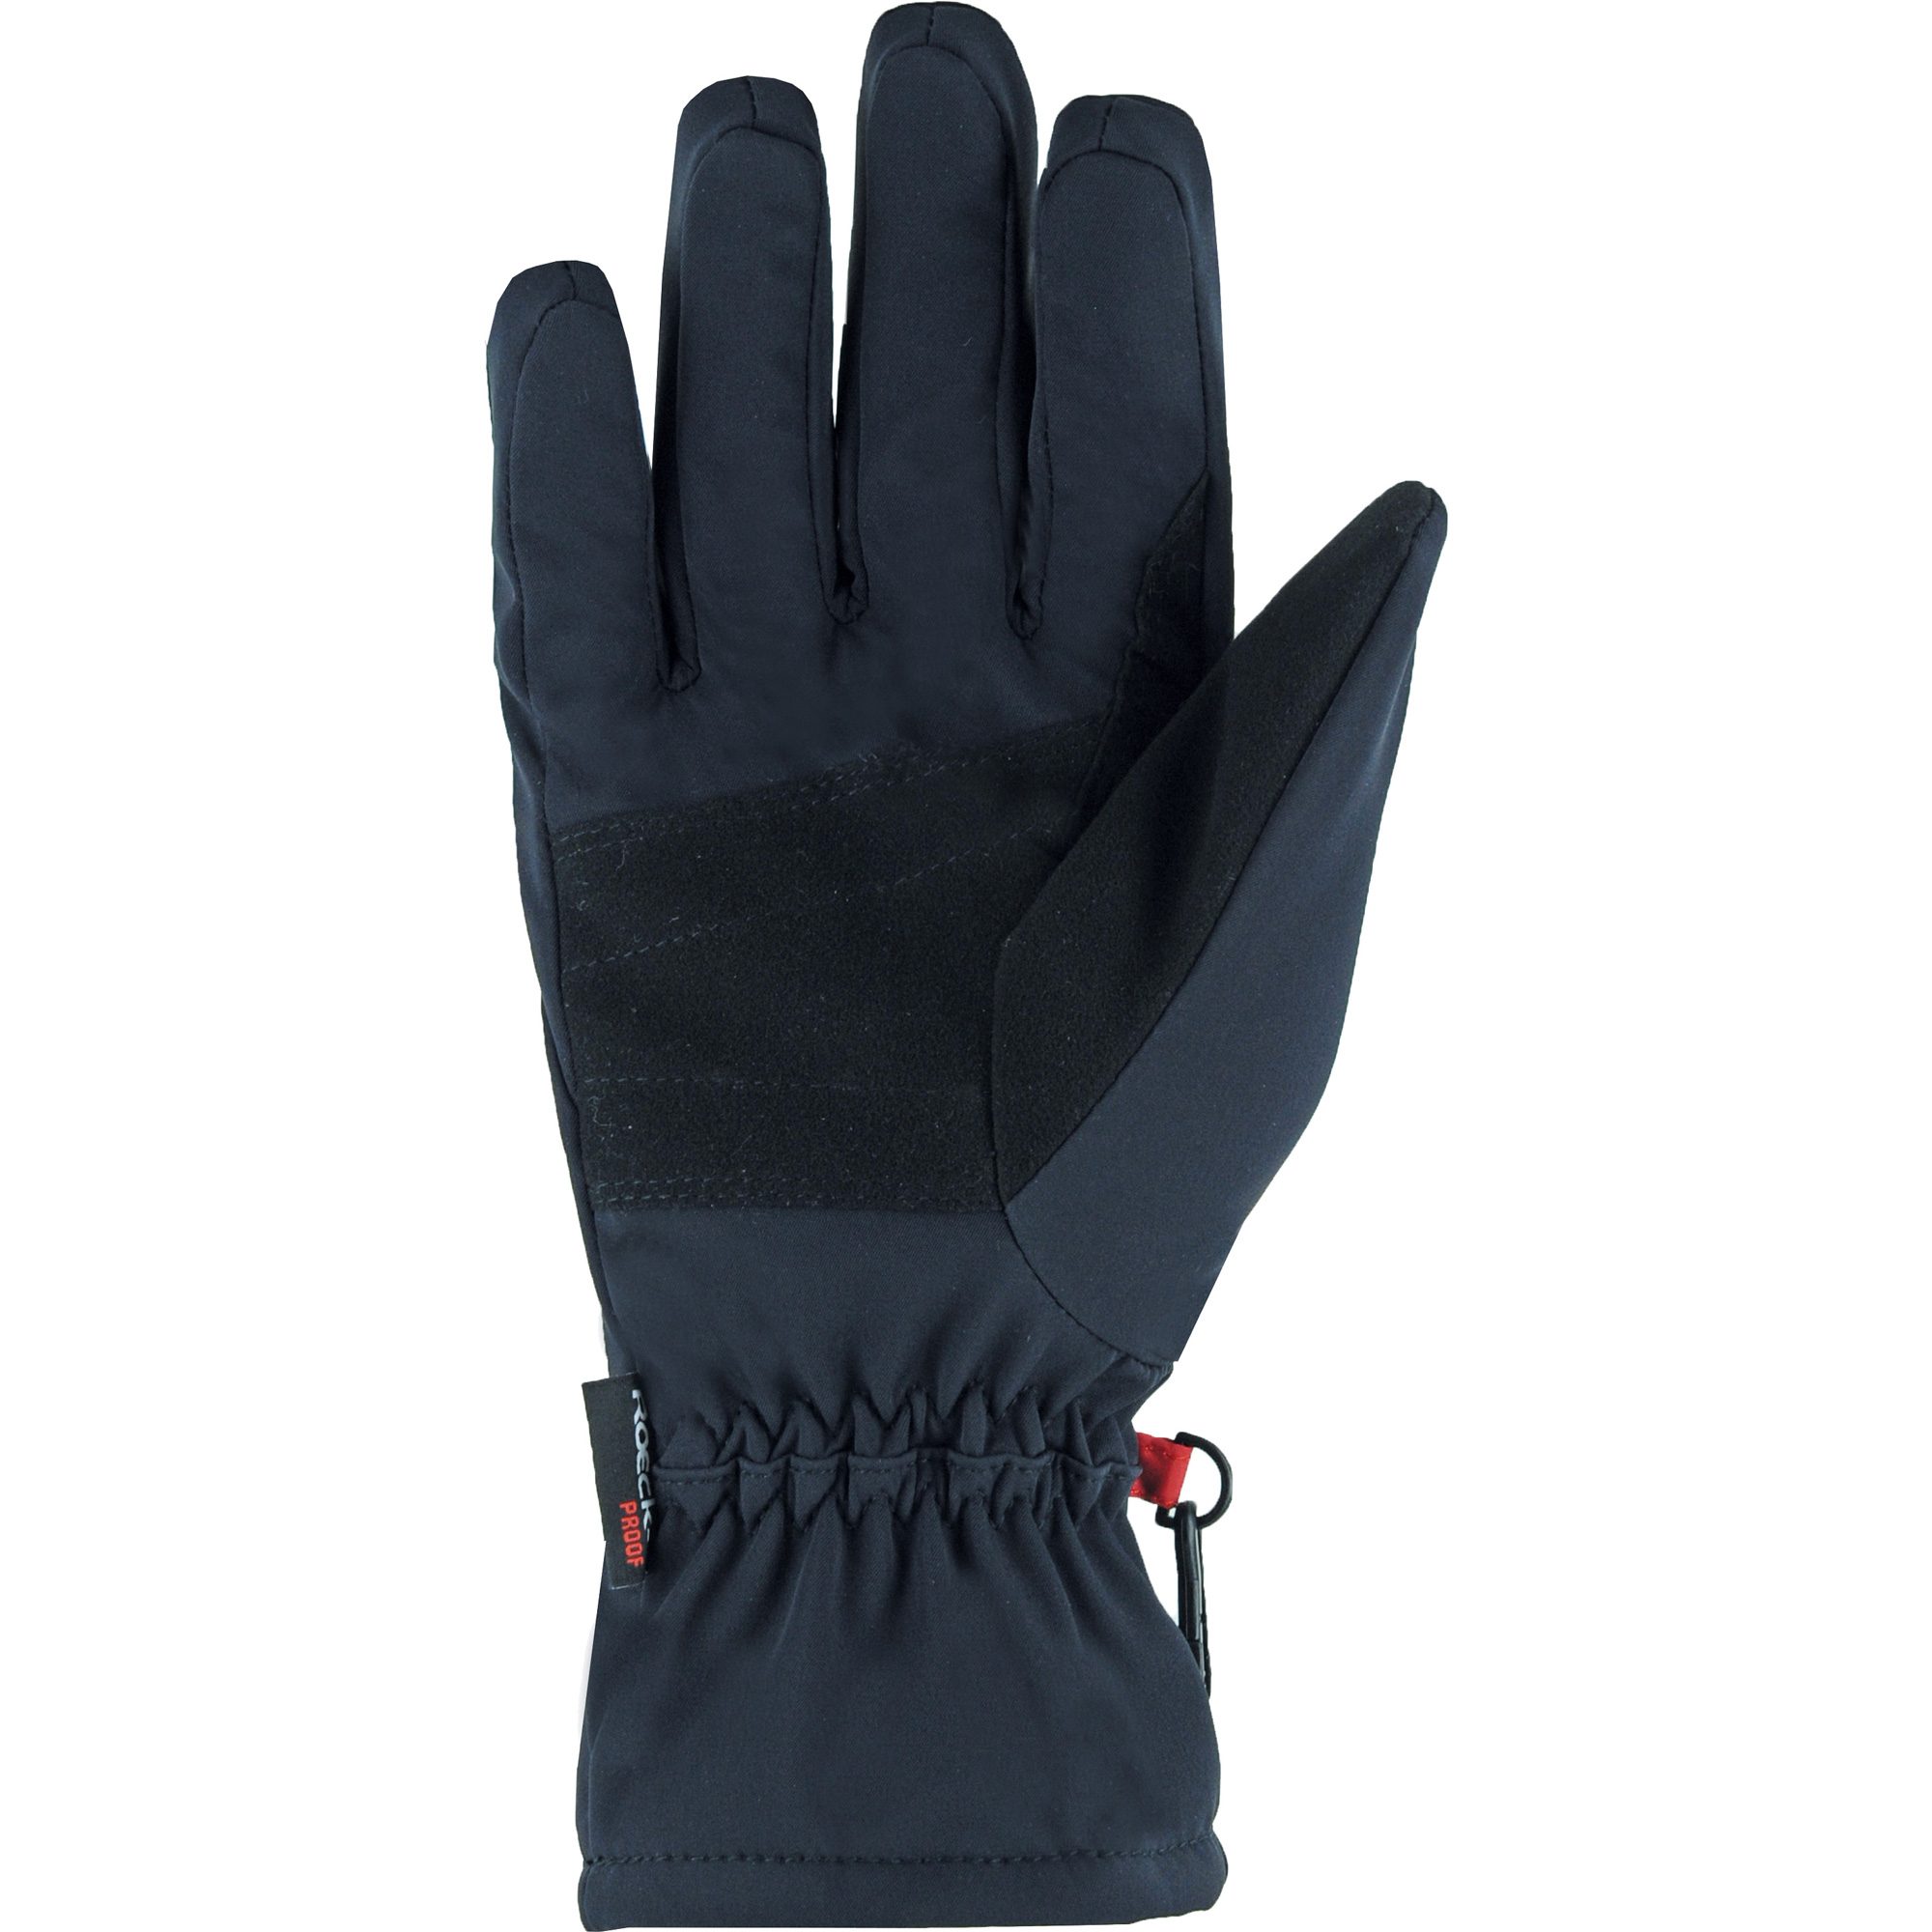 Roeckl Sports - RP Softshell Handschuhe kaufen Shop Bittl schwarz im Sport